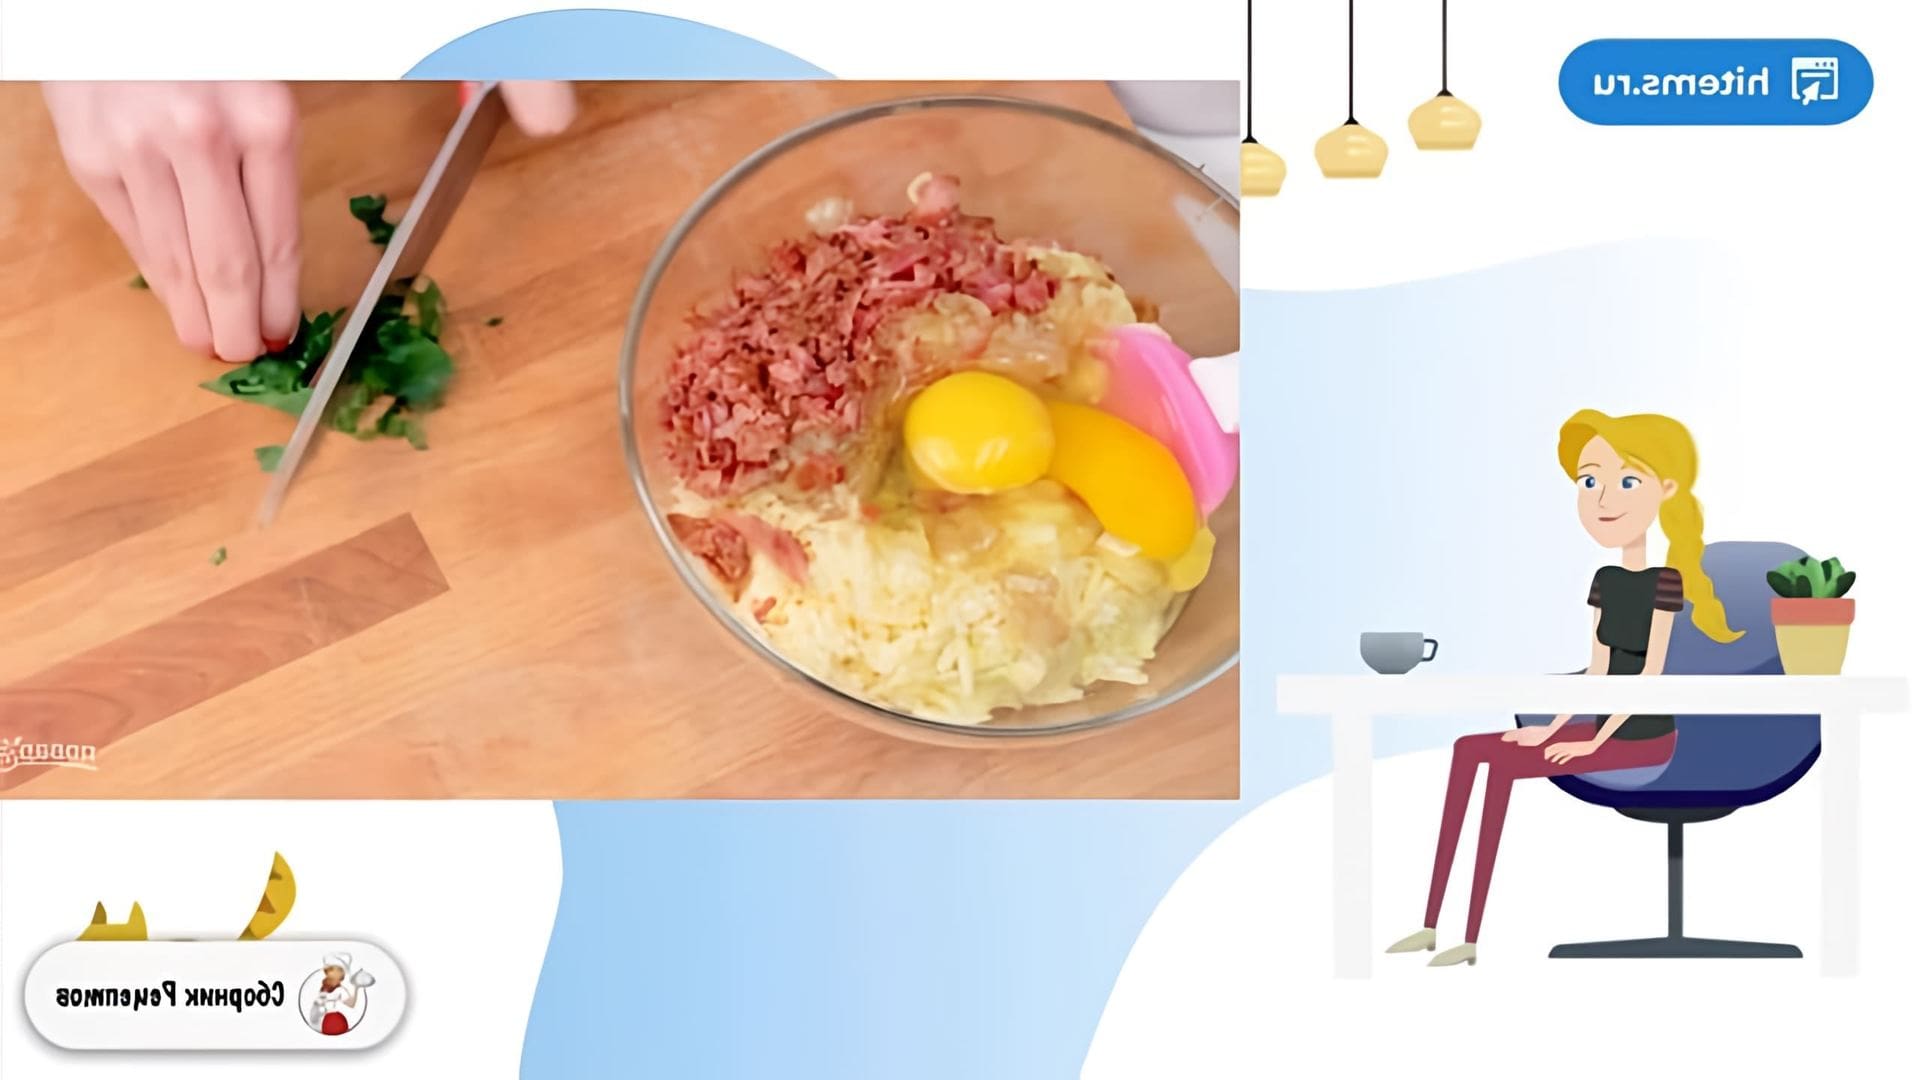 В этом видео демонстрируется рецепт приготовления идеальных картофельных котлет